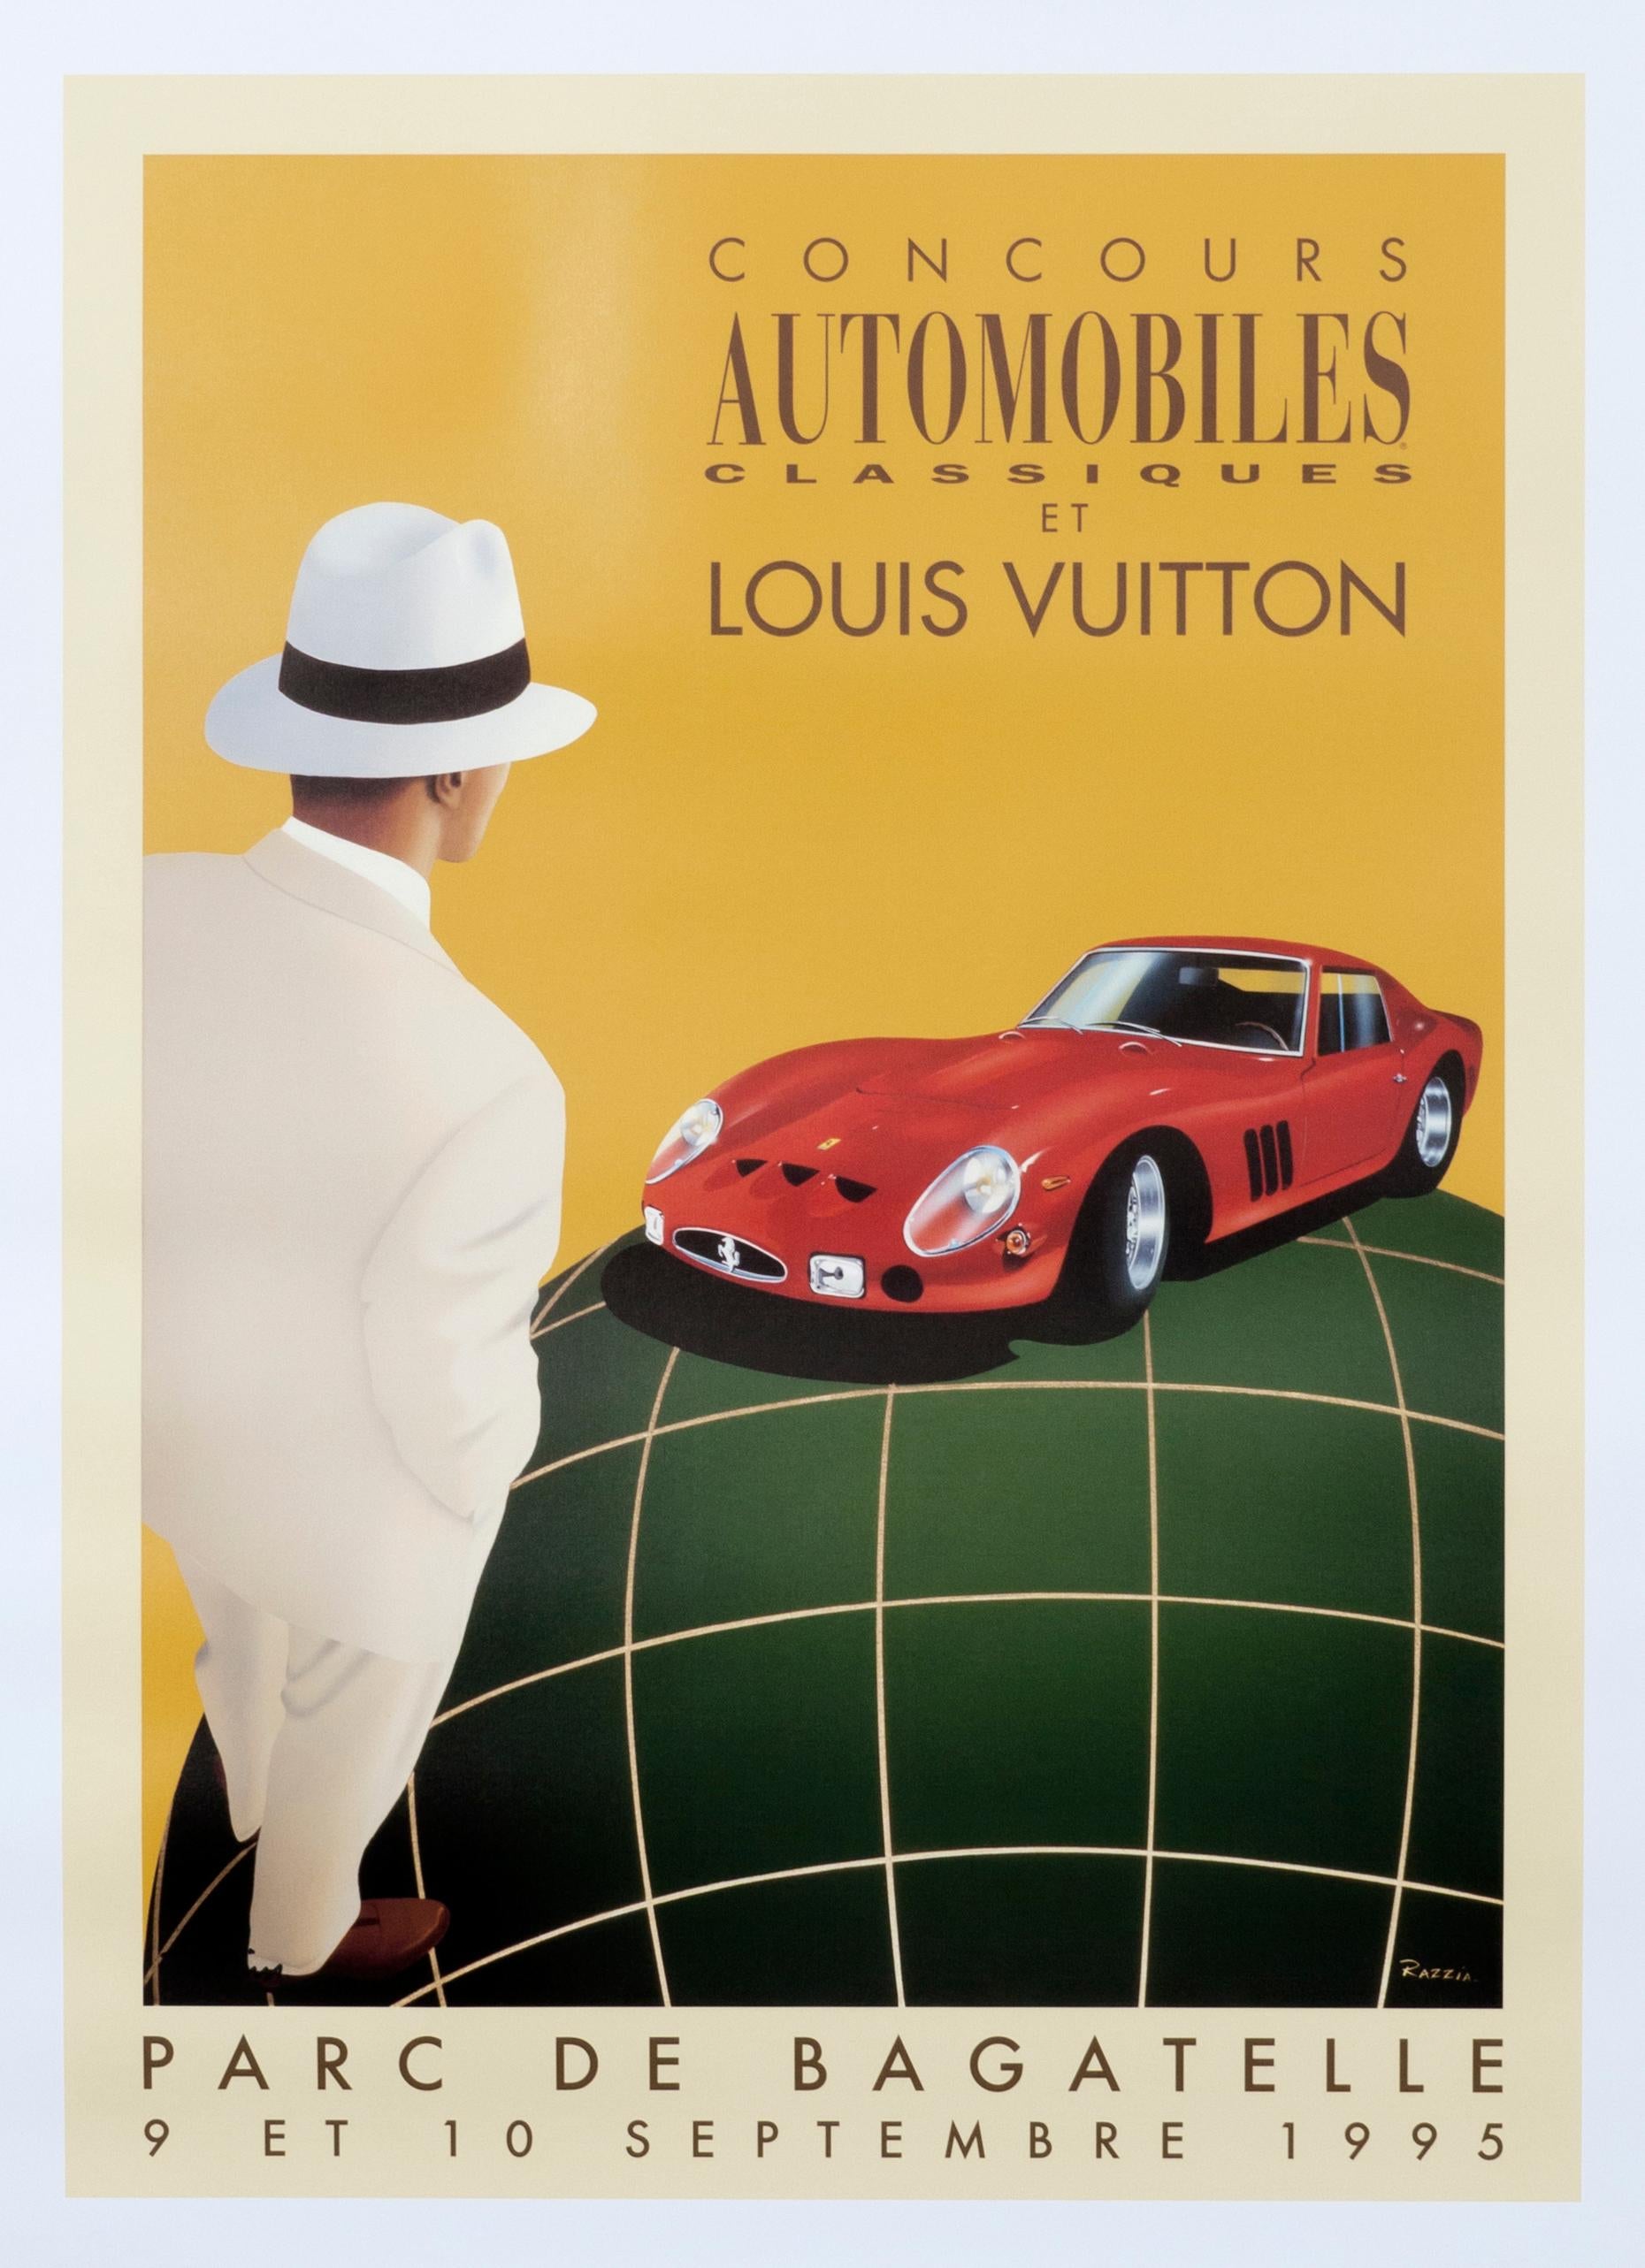 Figurative Print Razzia (Gérard Courbouleix–Dénériaz) - Affiche d'événement automobile vintage « Concours Automobiles Classiques et Louis Vuitton » (cours automobiles classiques et Louis Vuitton)